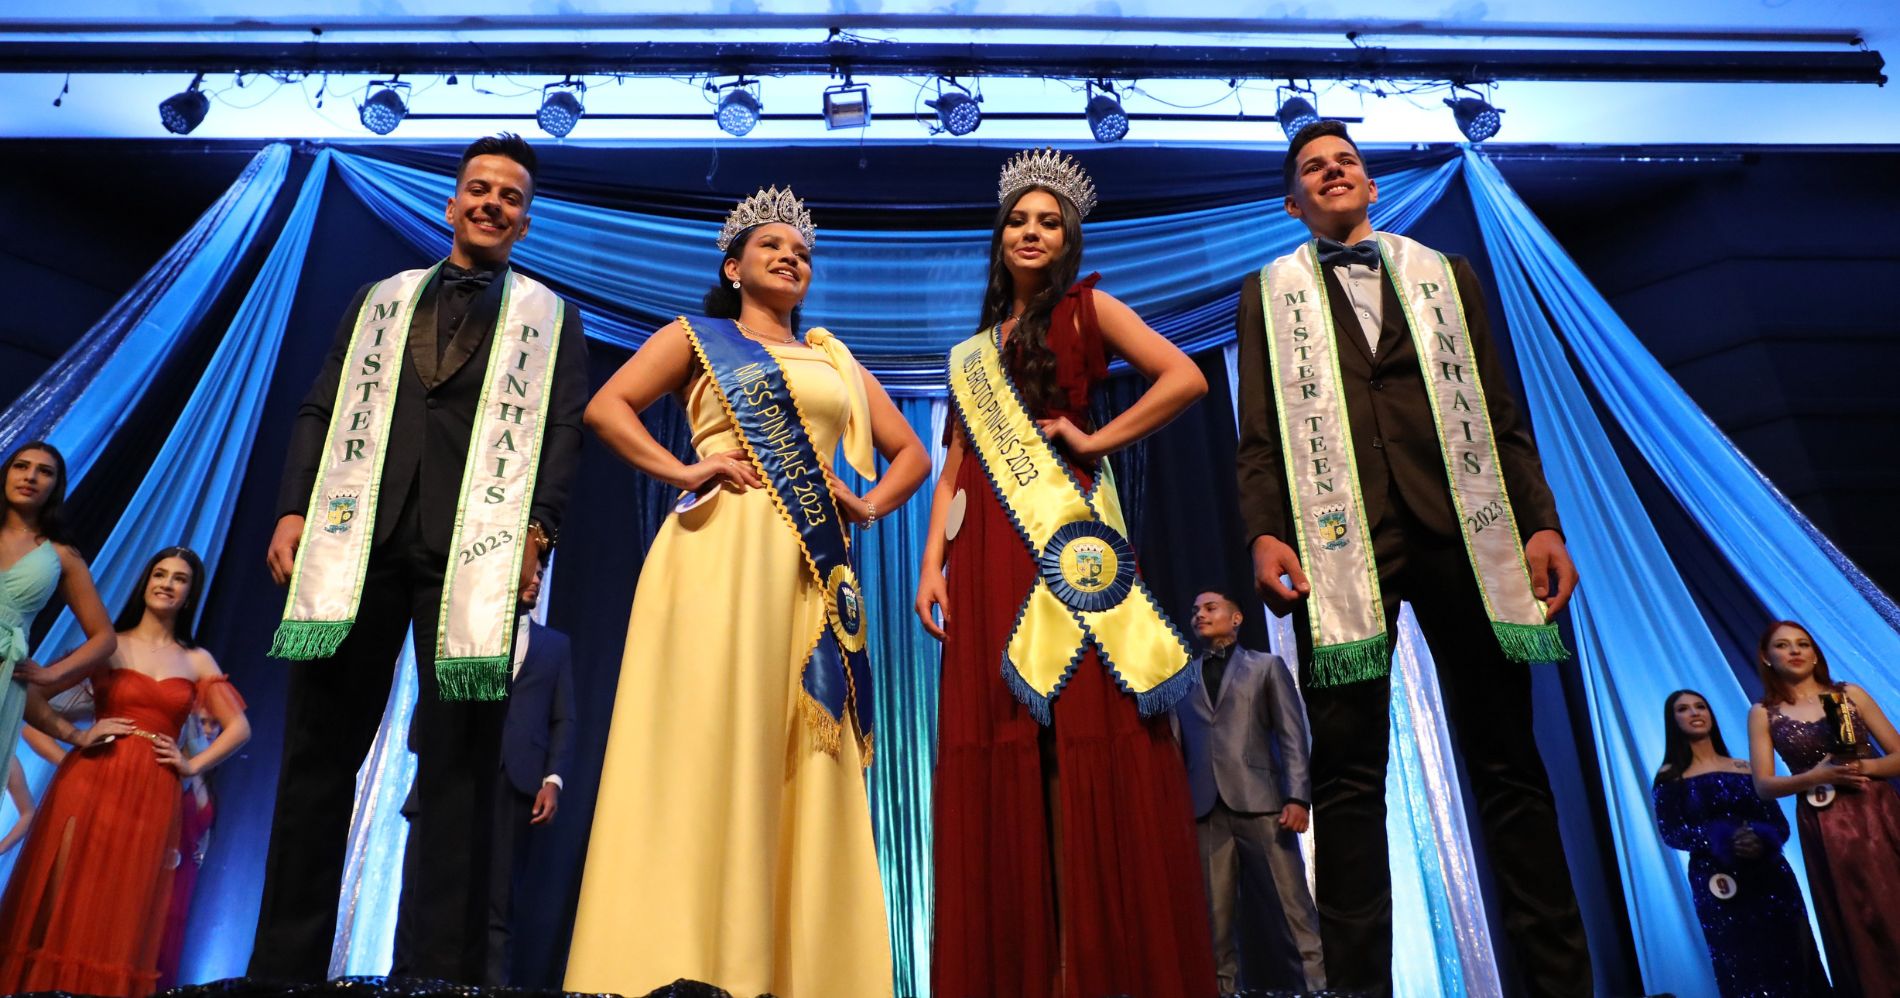 Concurso Miss e Mister realiza sua 32ª edição em Pinhais